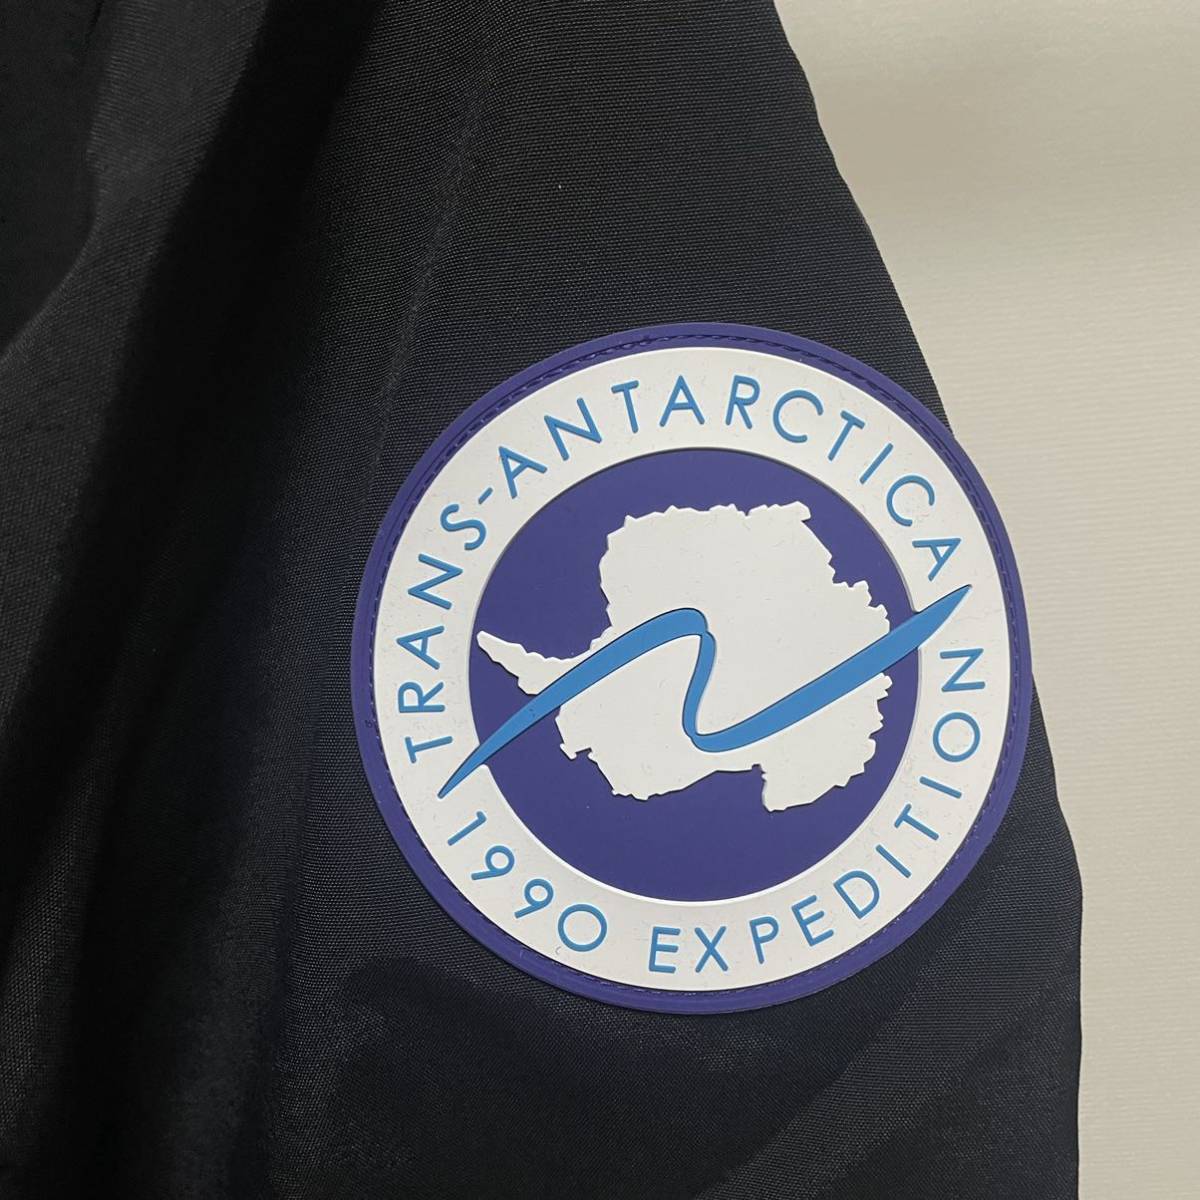 【ノースフェイス直営店限定】トランスアンタークティカ マウンテンジャケット【Mサイズ】Trans Antarctica Mountain Jacket【新品未着用】_画像5